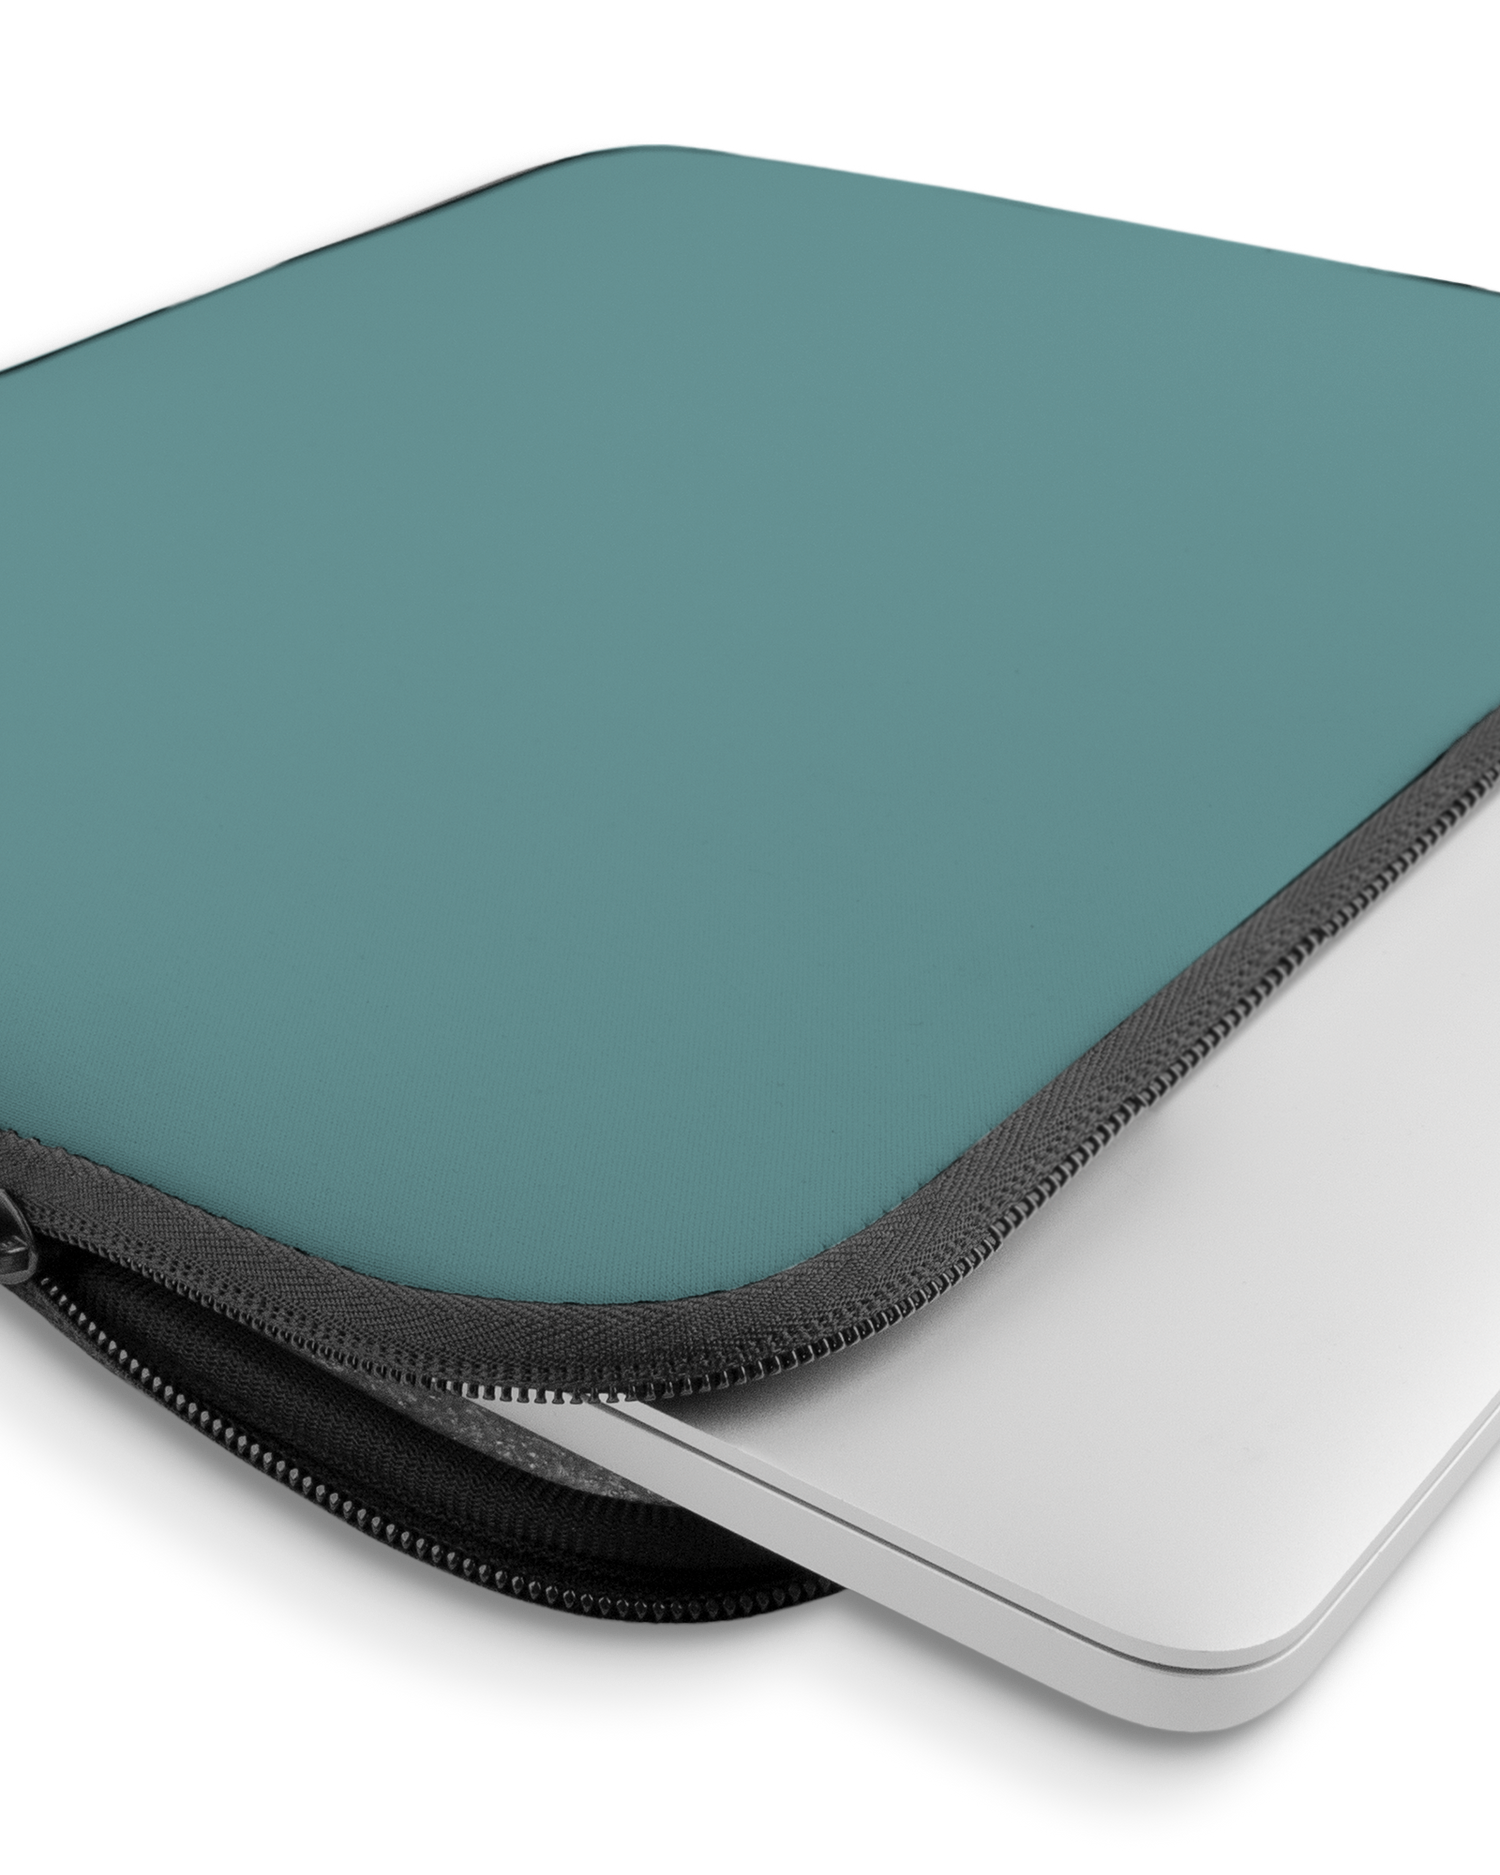 TURQUOISE Laptophülle 15 Zoll mit Gerät im Inneren